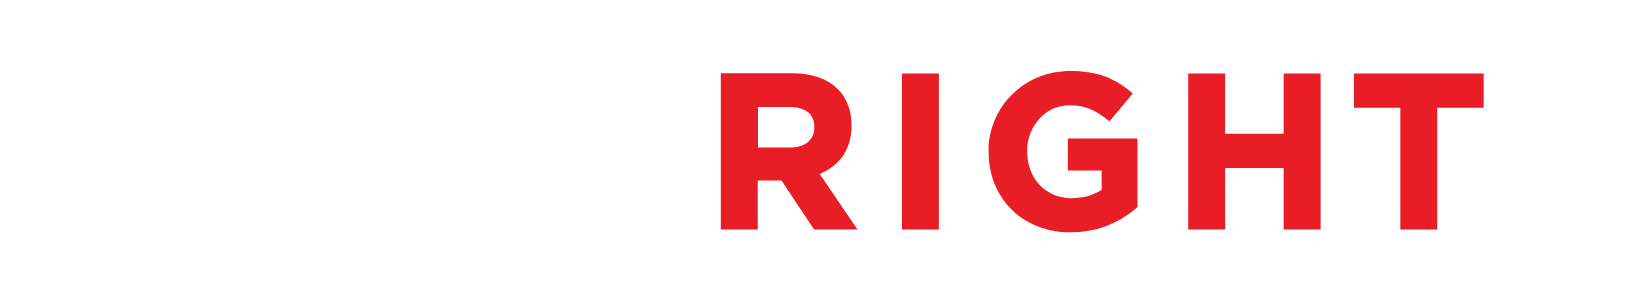 HireRight logo grand pour les fonds sombres (PNG transparent)